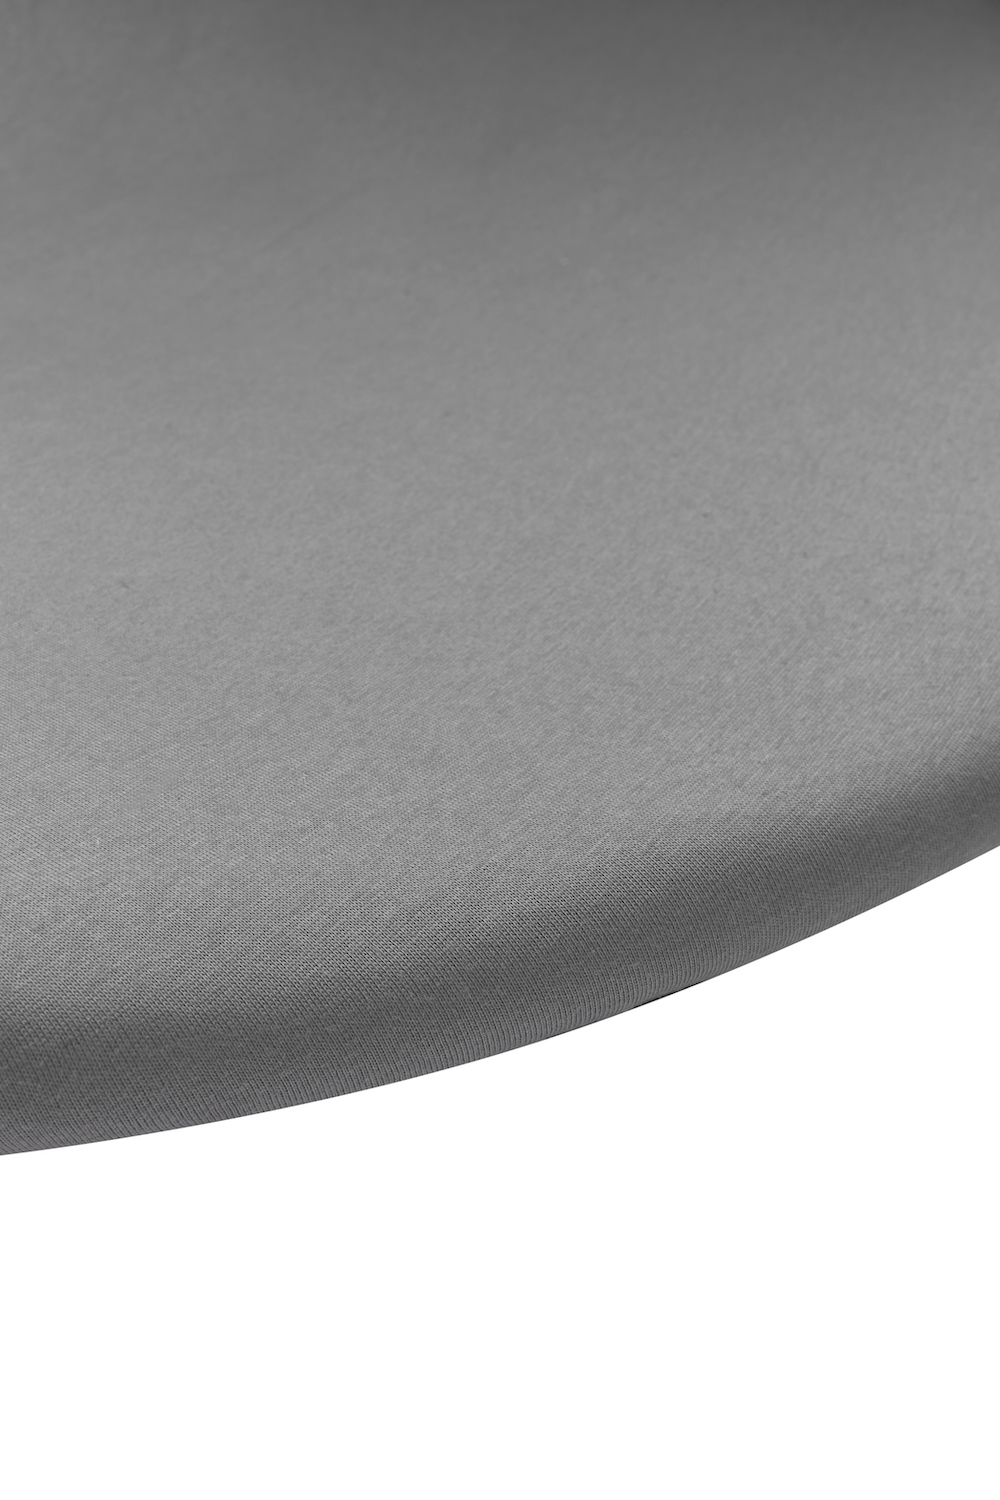 Jersey Fitted Sheet Playpen Mattress Round - Grey - 90/95cm